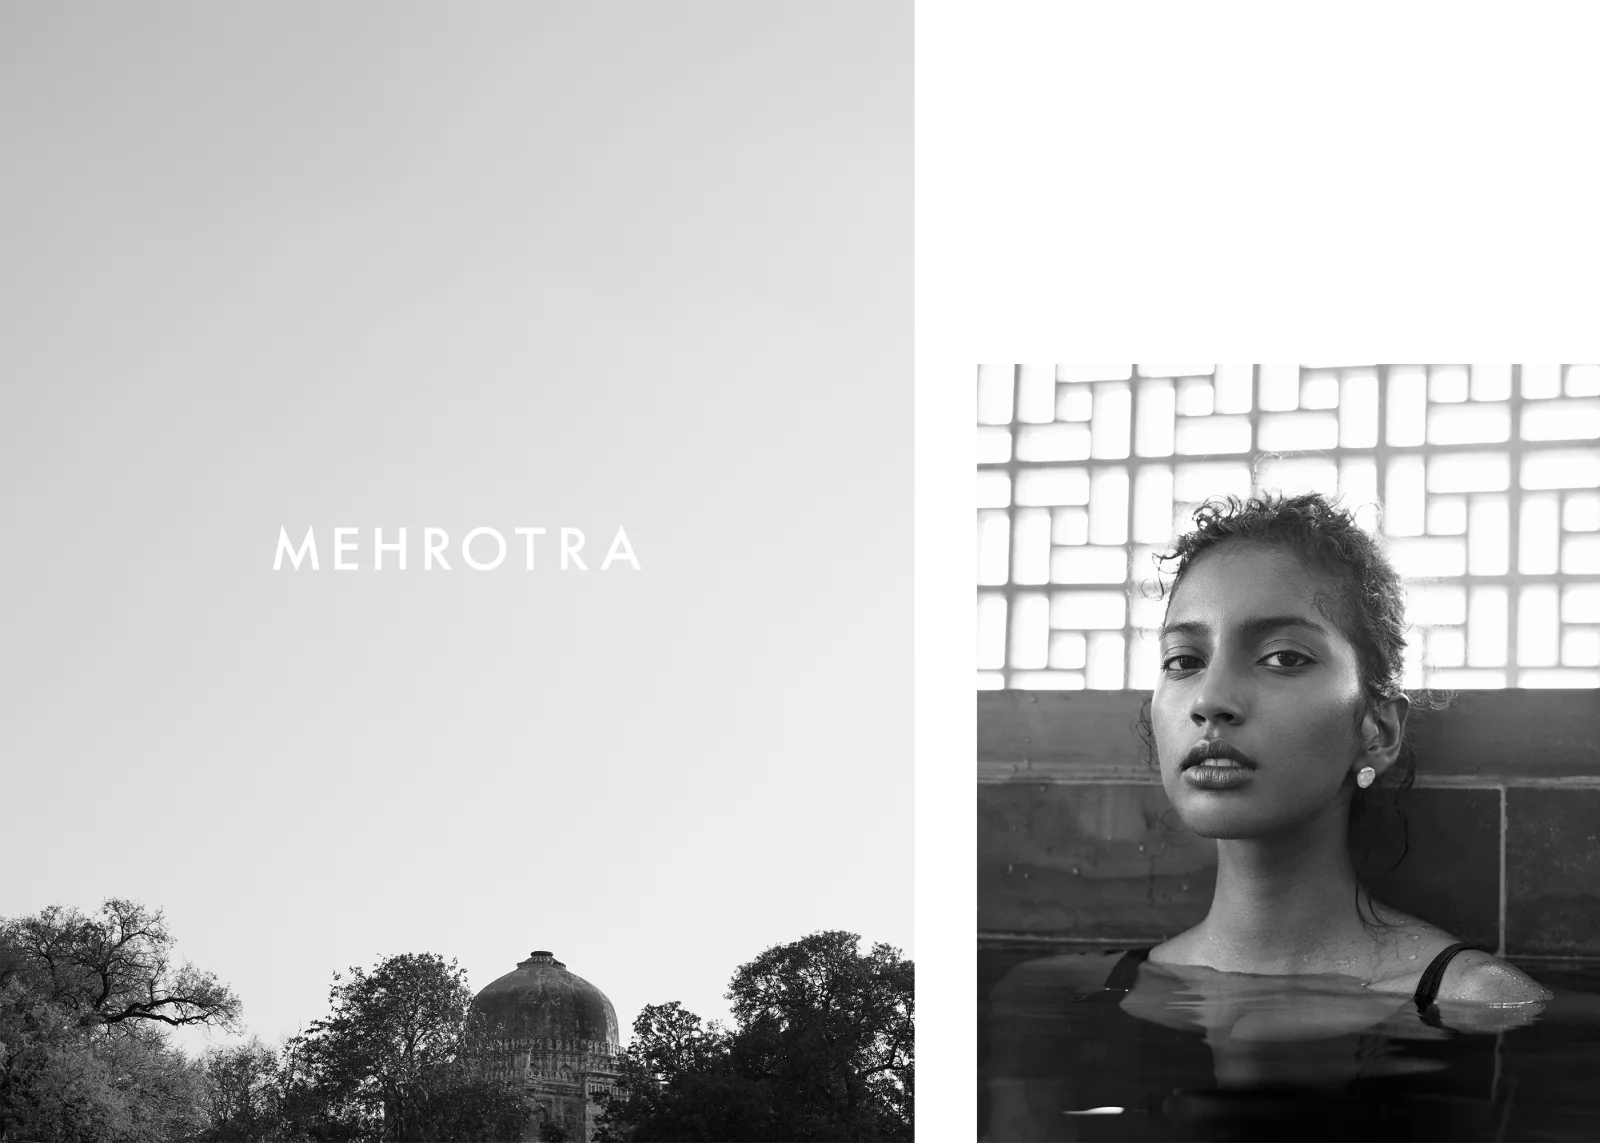 Mehrotra 7 by Tobias LUNDKVIST